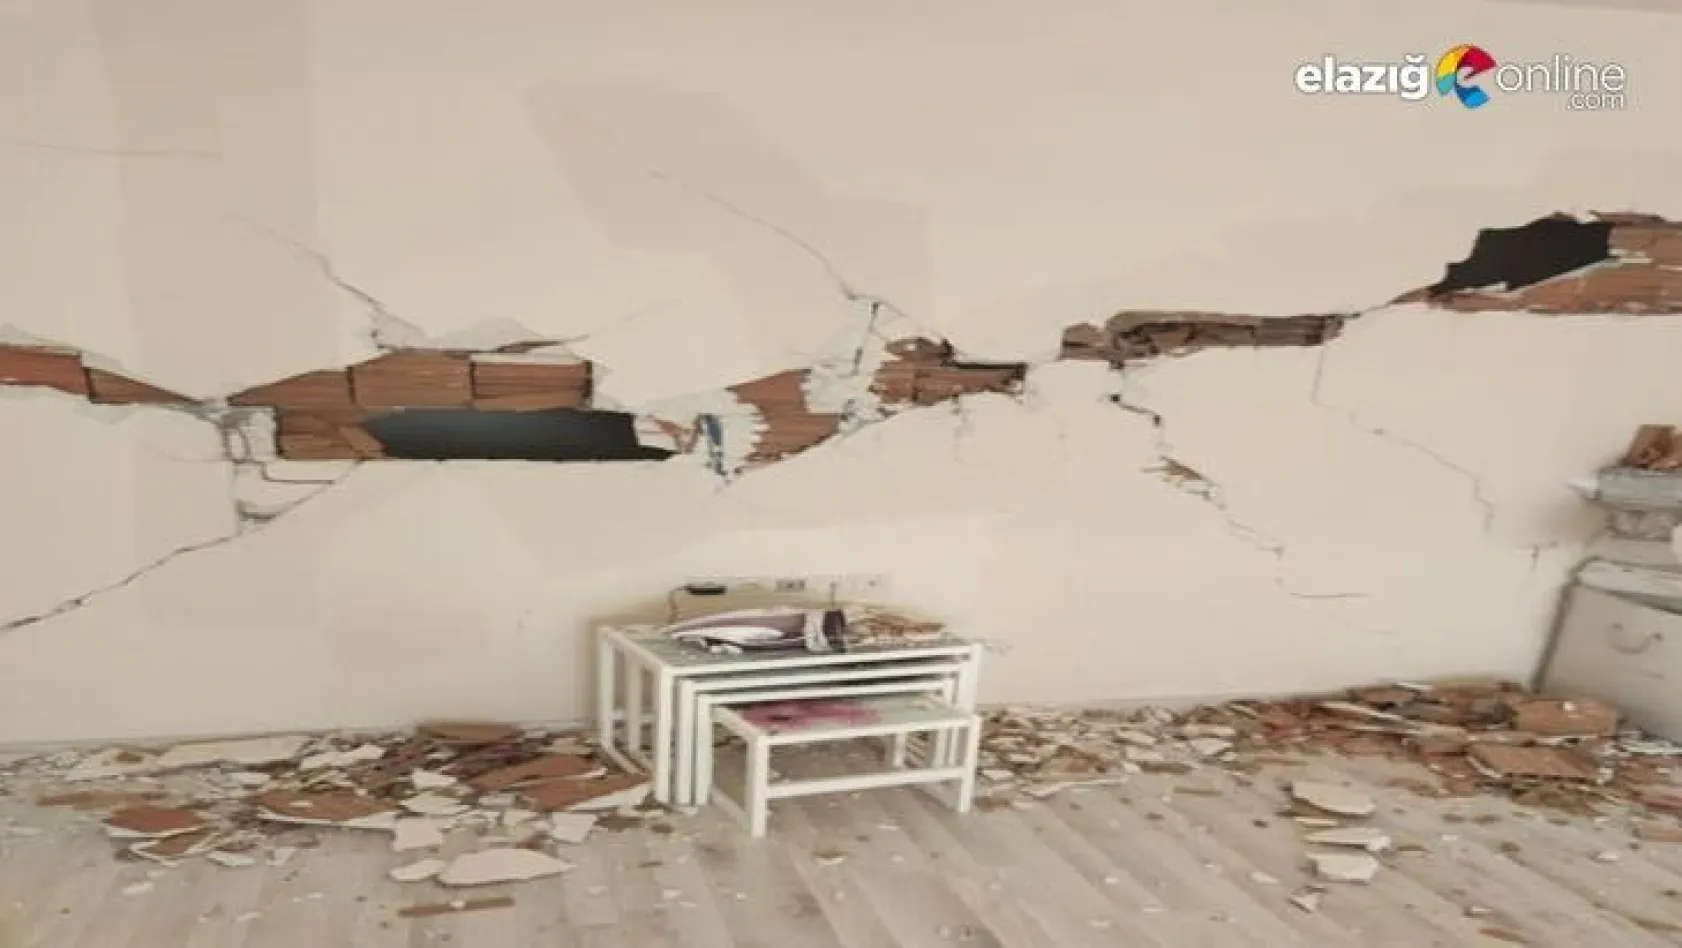 Elazığ'da bazı evler hasar gördü